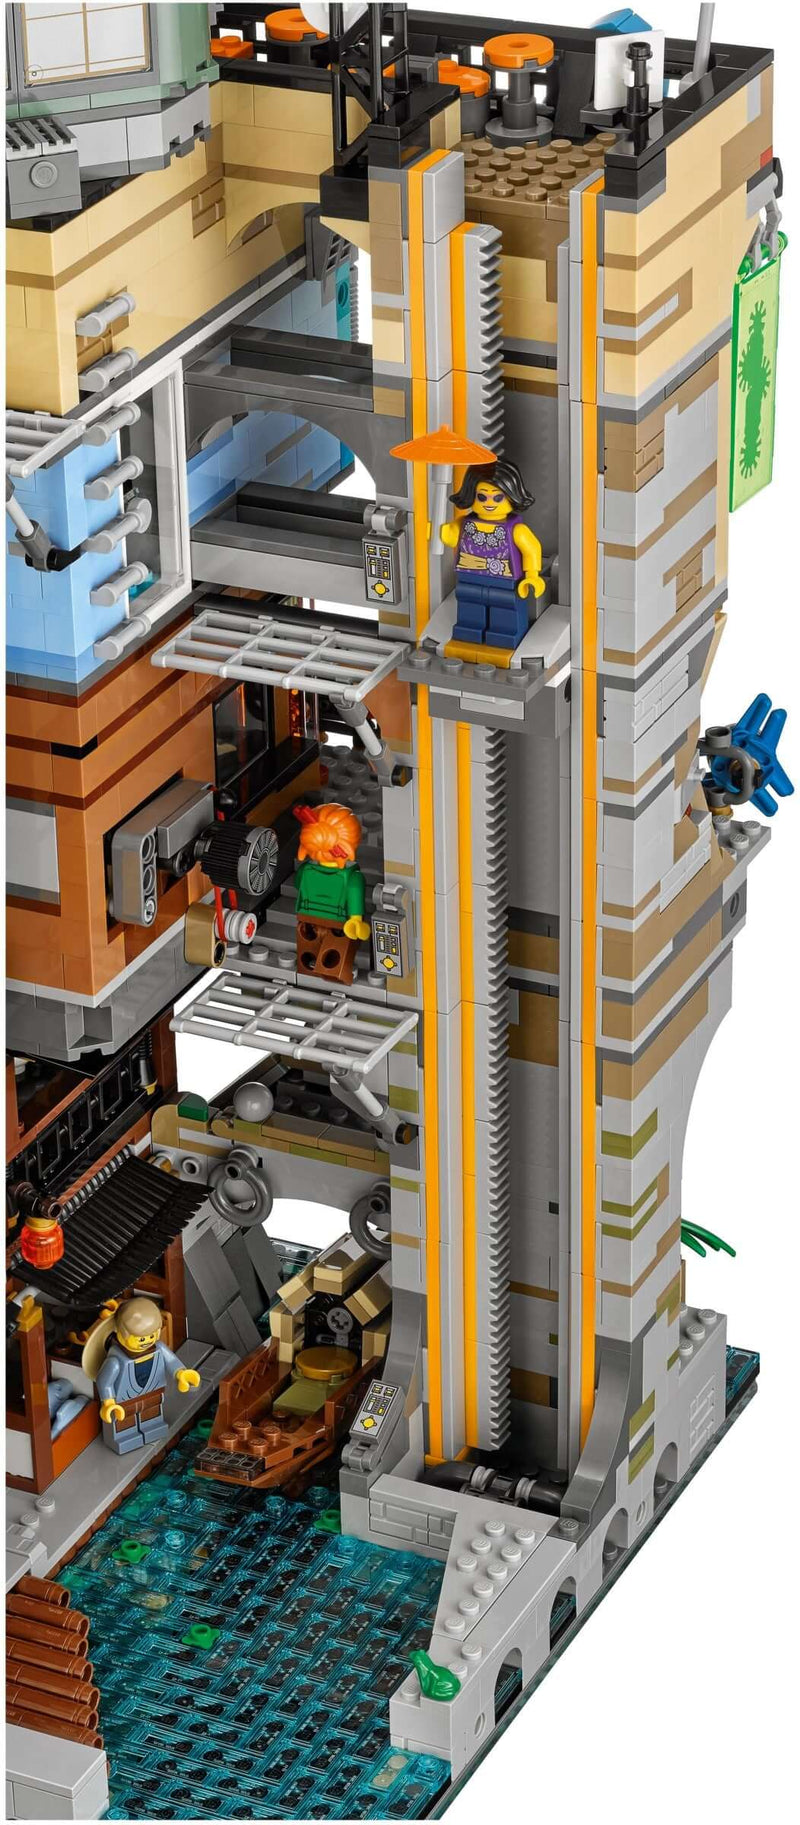 LEGO Ninjago 70620 Ninjago City